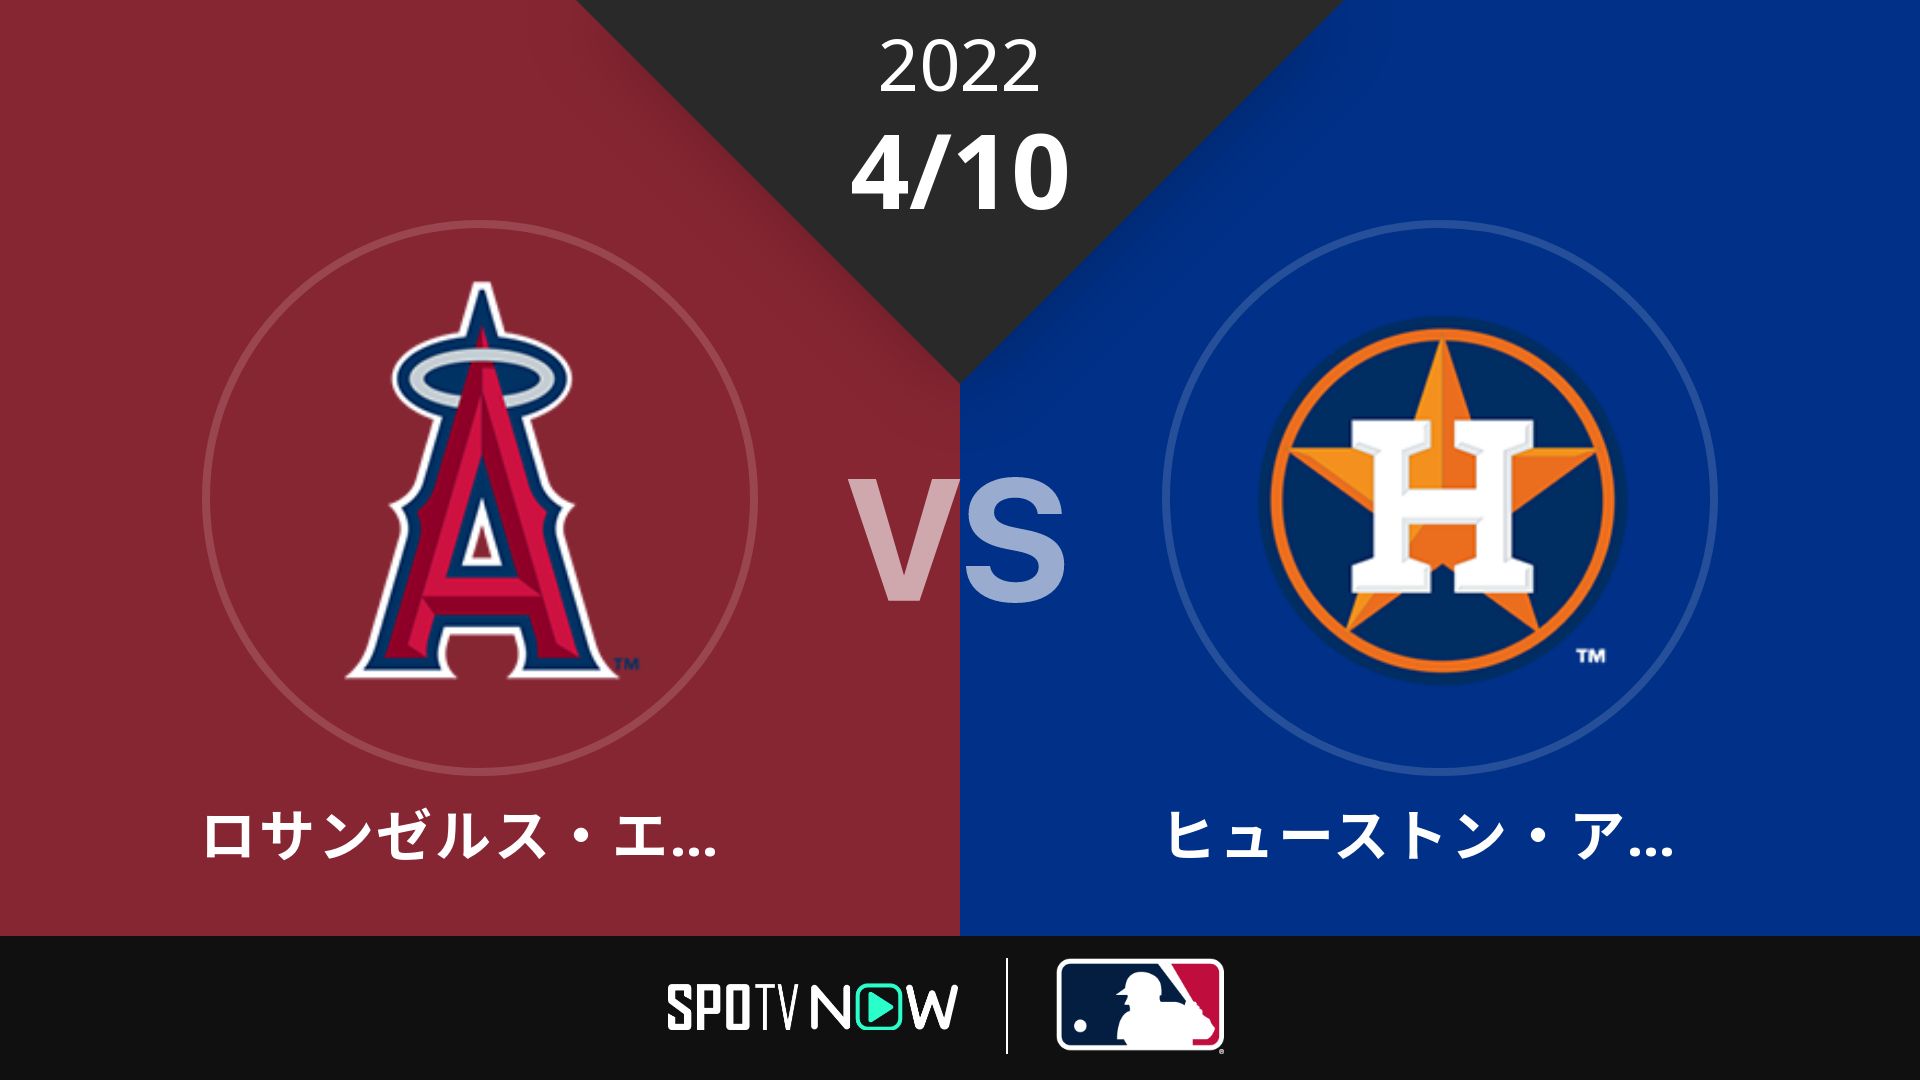 2022/4/10 エンゼルス vs アストロズ [MLB]